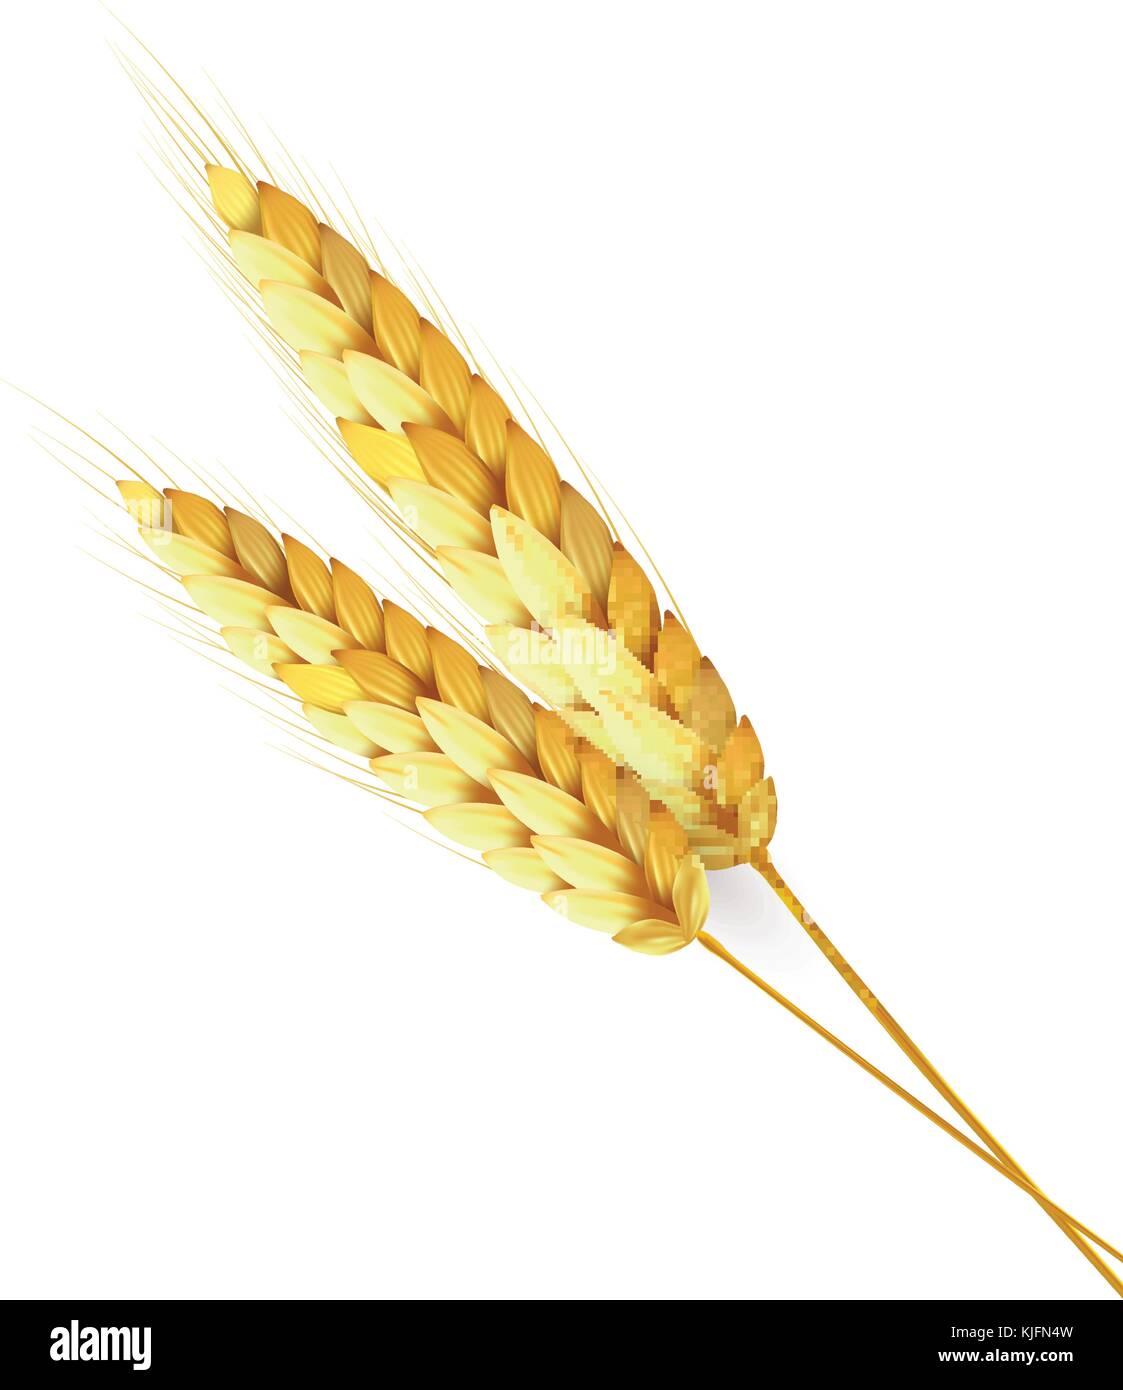 Le grain de blé, orge, avoine, riz, s/n l'agriculture. lumineux couleur or harvest Illustration de Vecteur